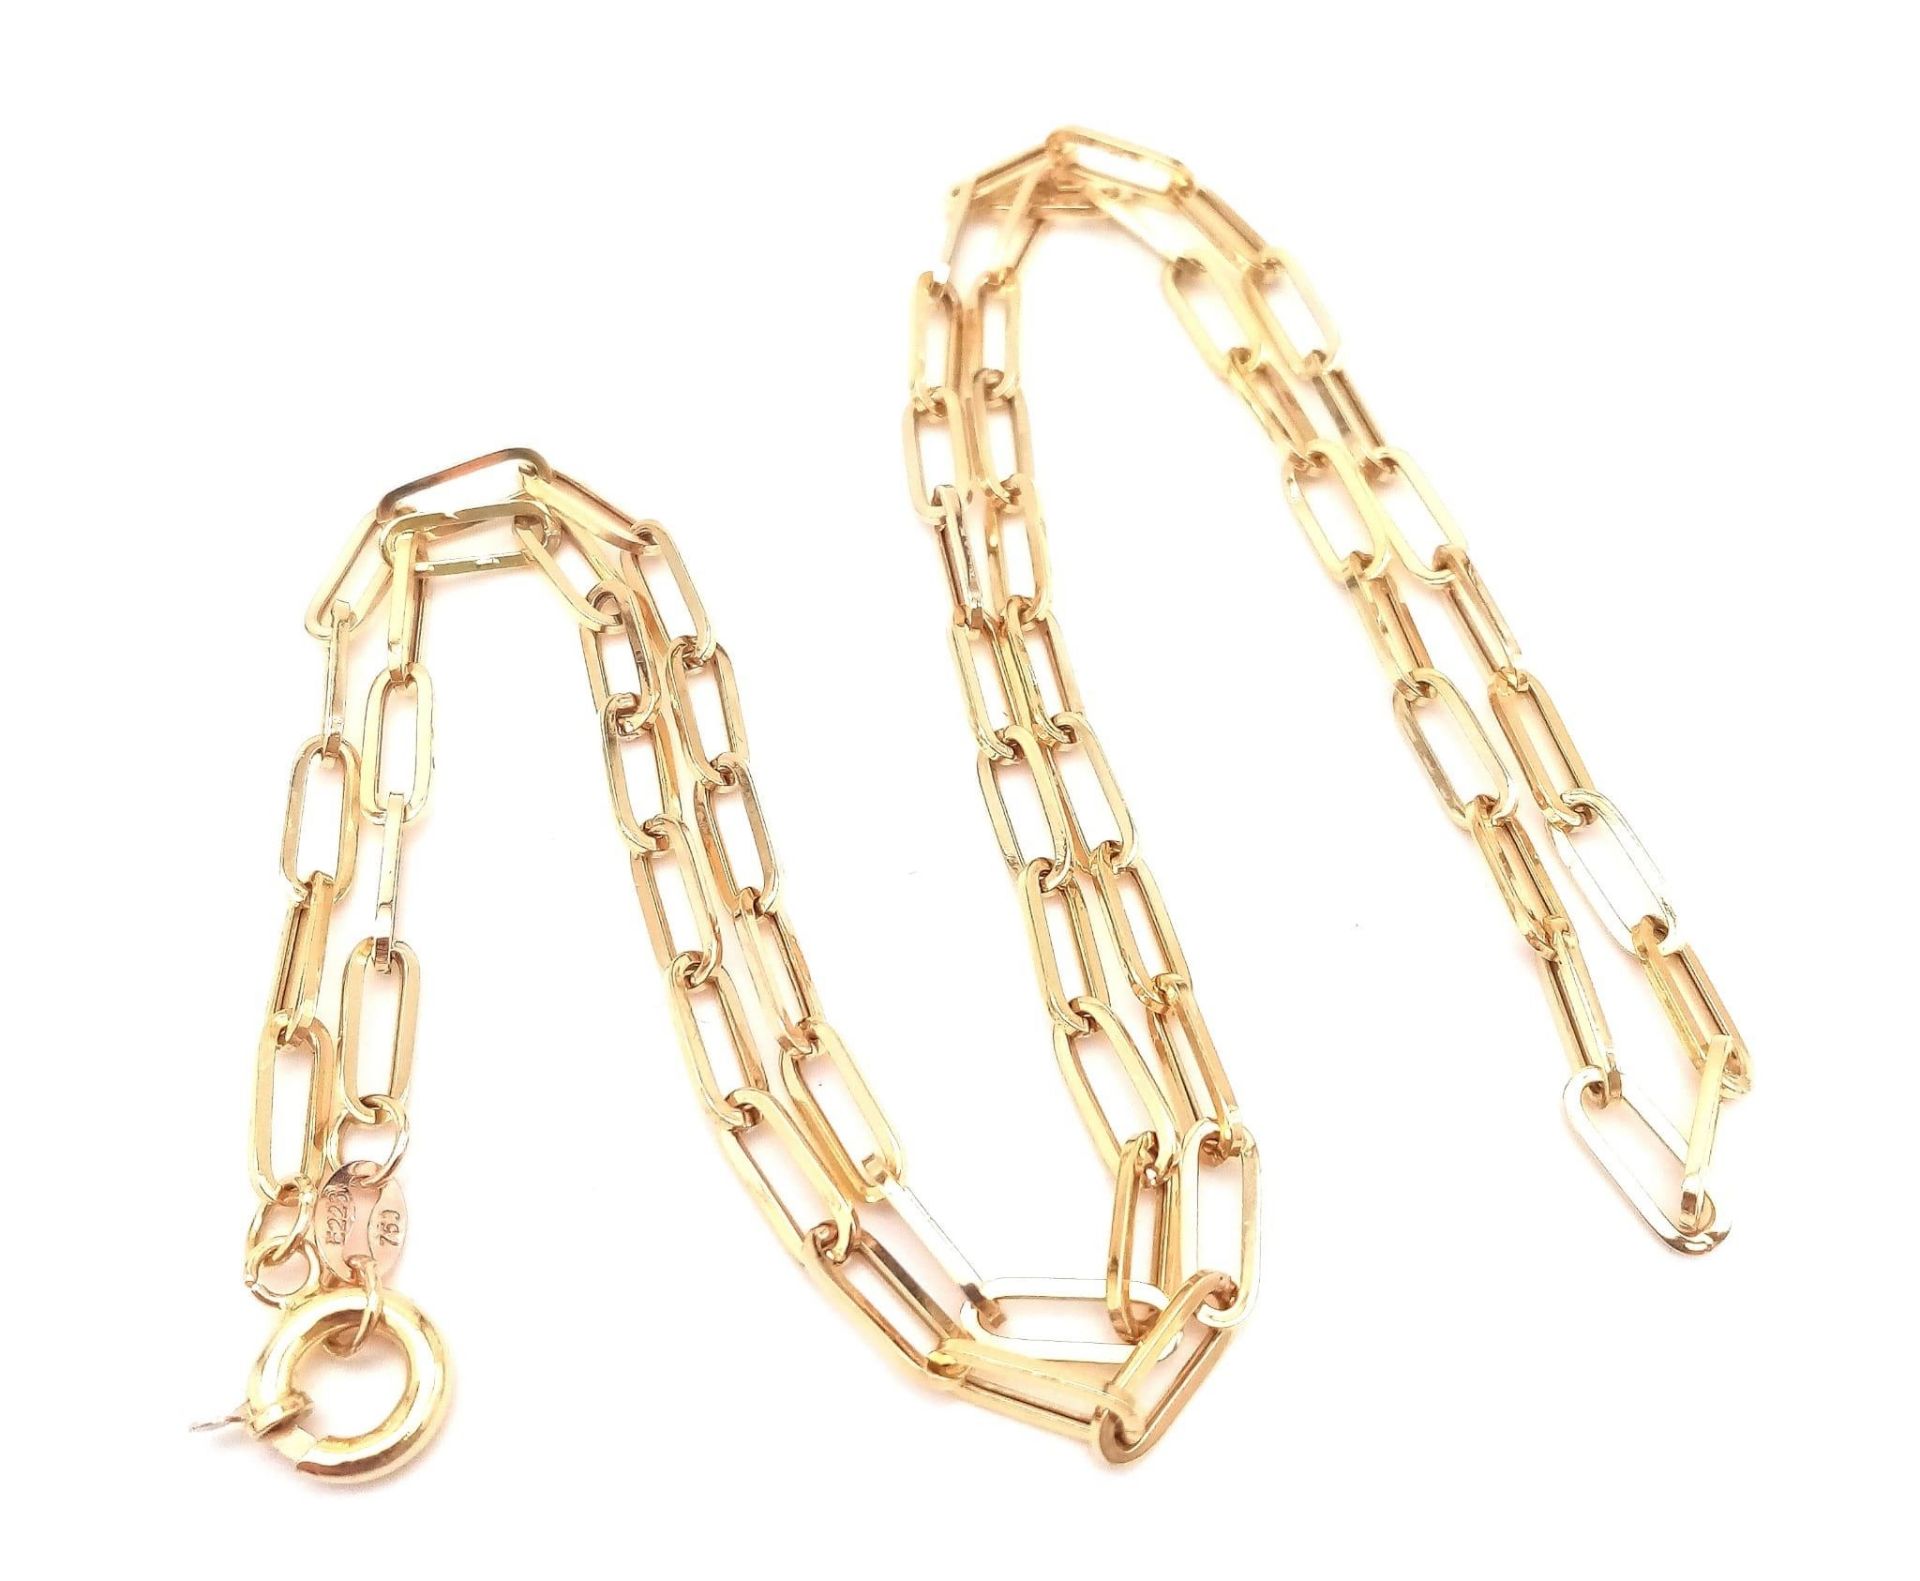 An 18K Yellow Gold Elongated Link Chain. 56cm length. 5.5g weight. - Bild 6 aus 9